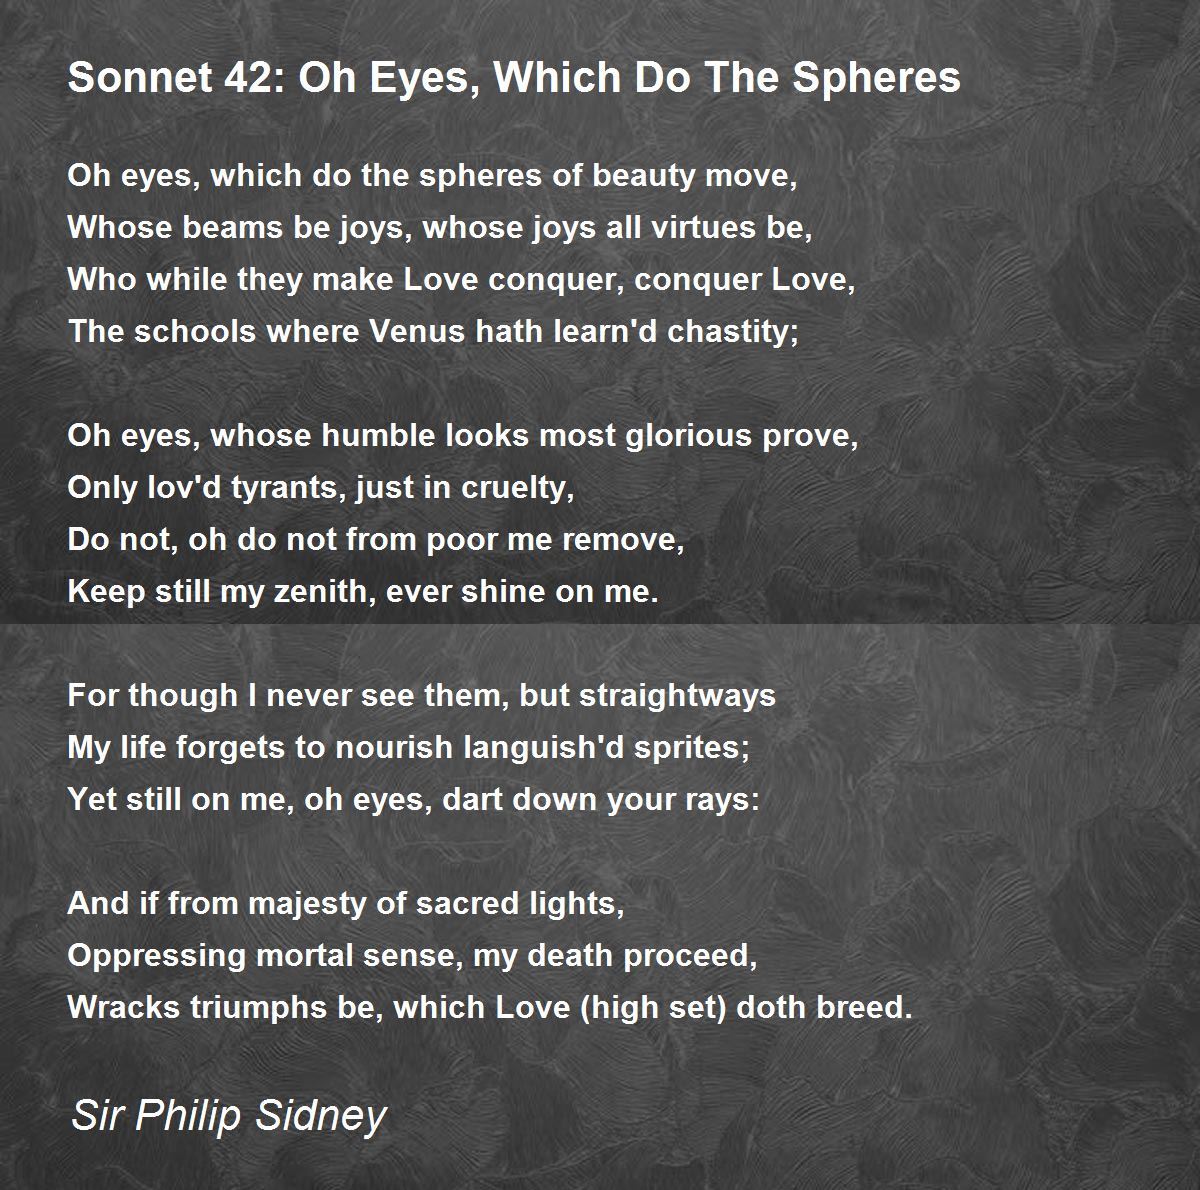 sonnet 42